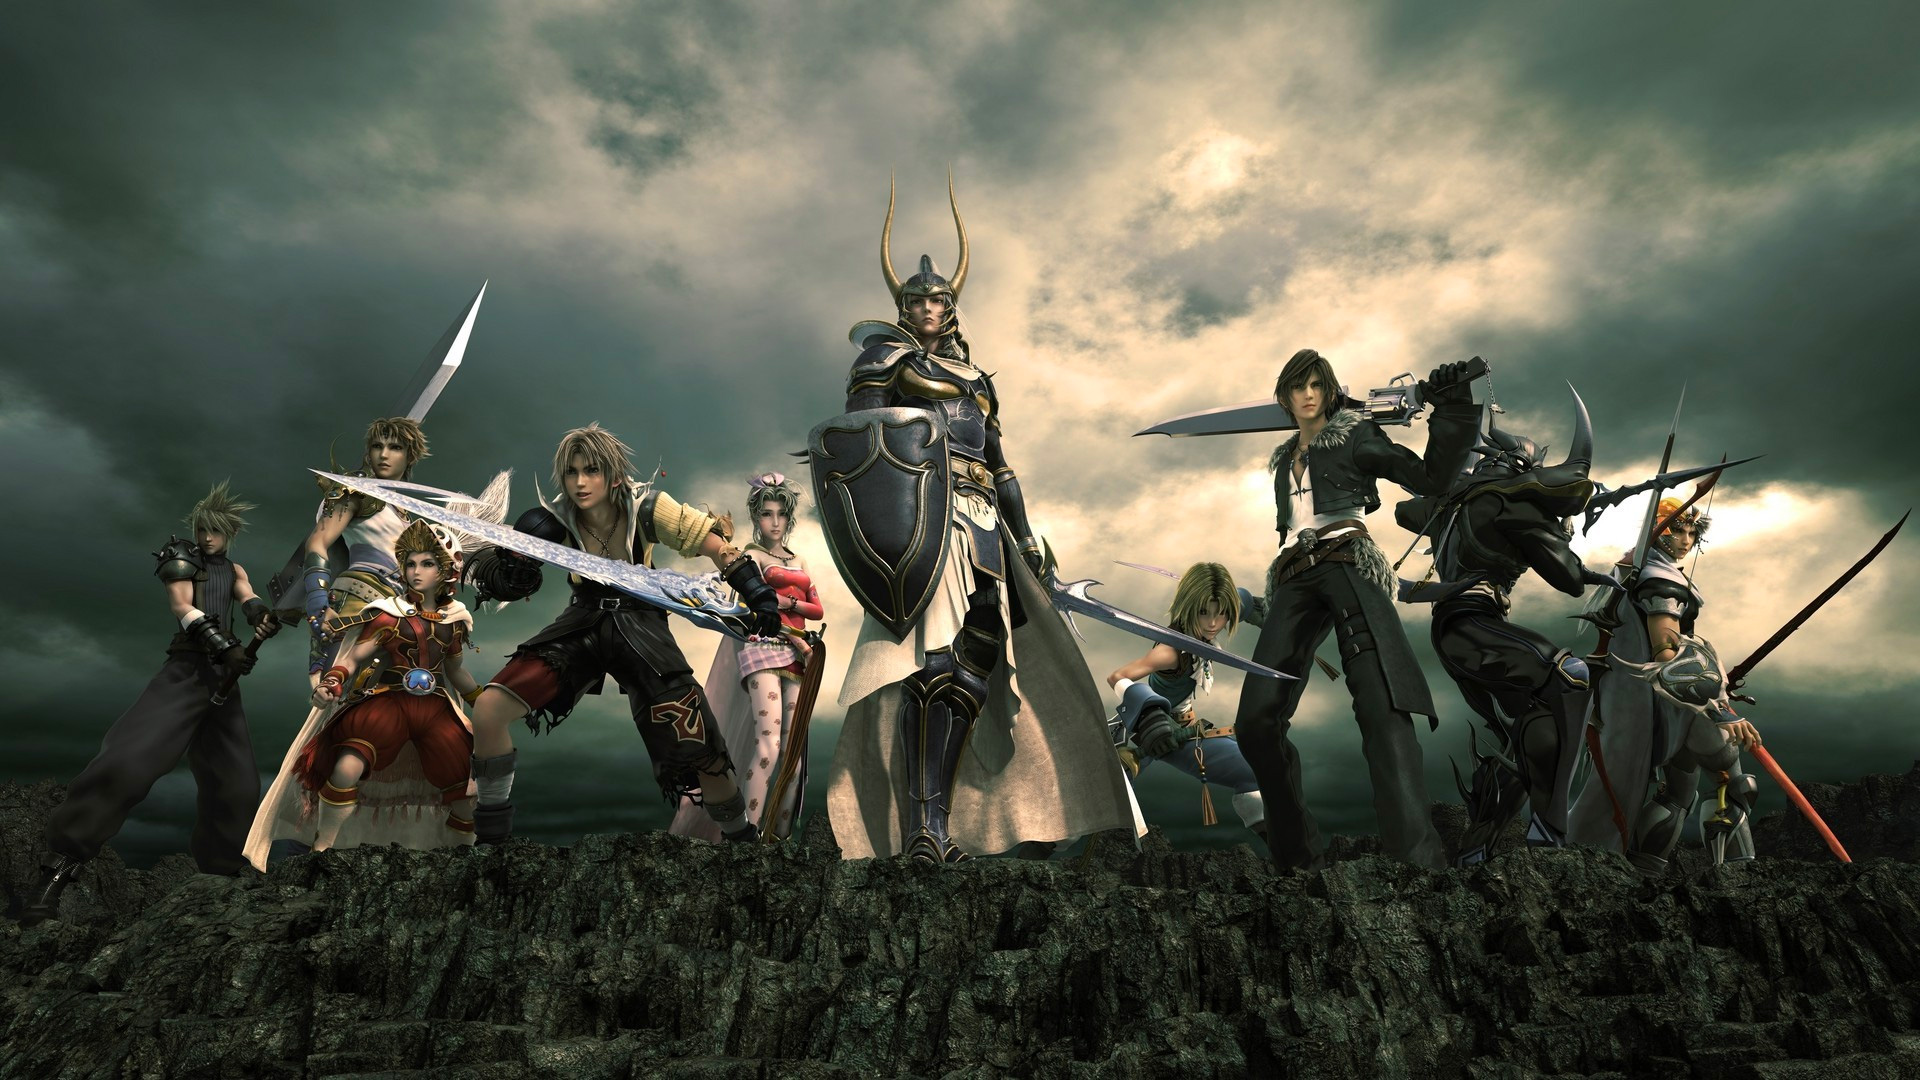 Final Fantasy Origin, un spin-off orienté action-RPG, serait en développement sur PS5 et PC